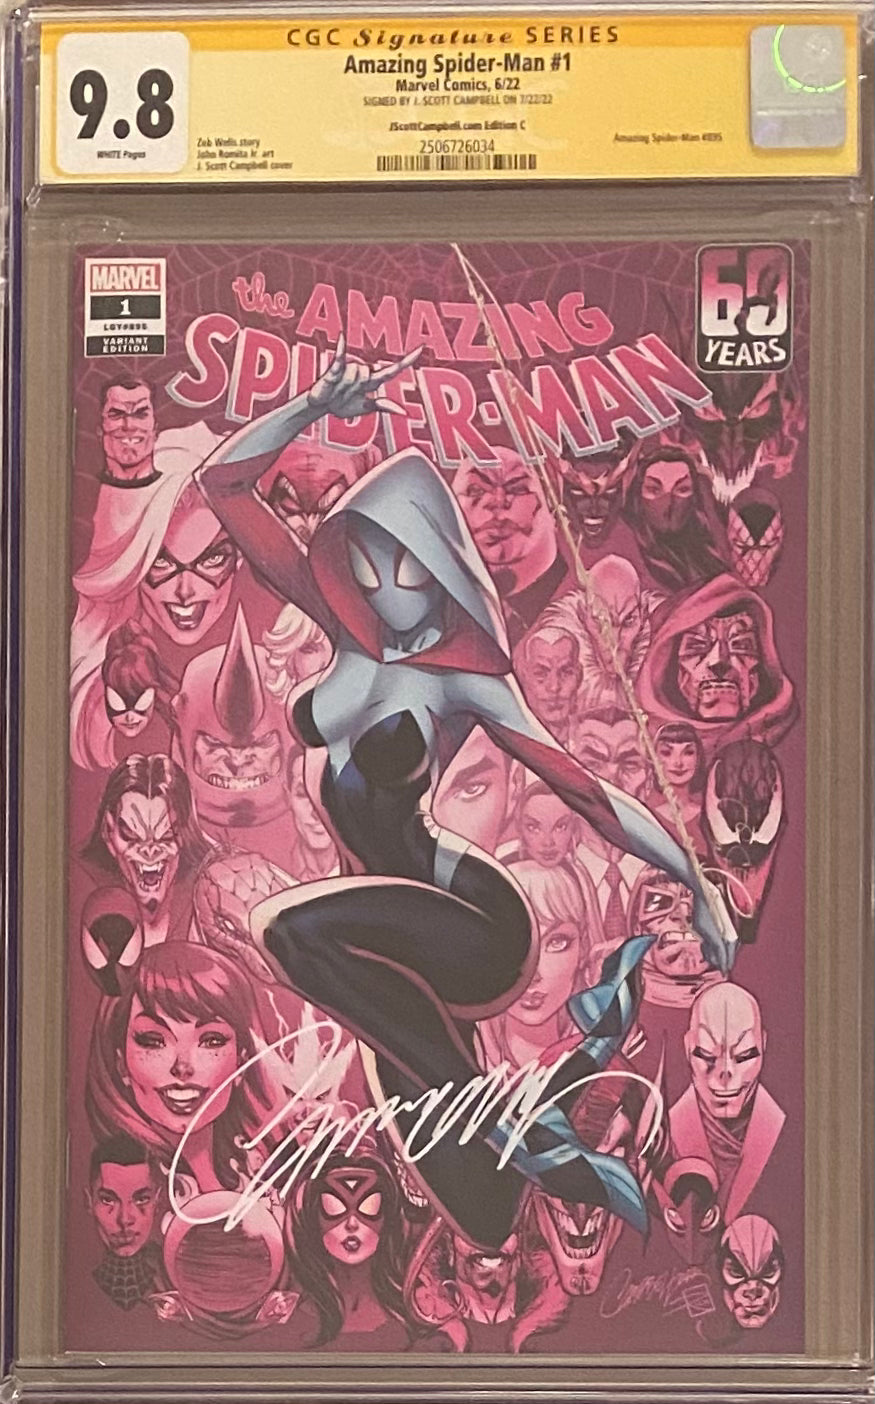 Amazing Spider-Man #1 J. Scott Campbell Edition C "Spider-Gwen" CGC 9.8 SS